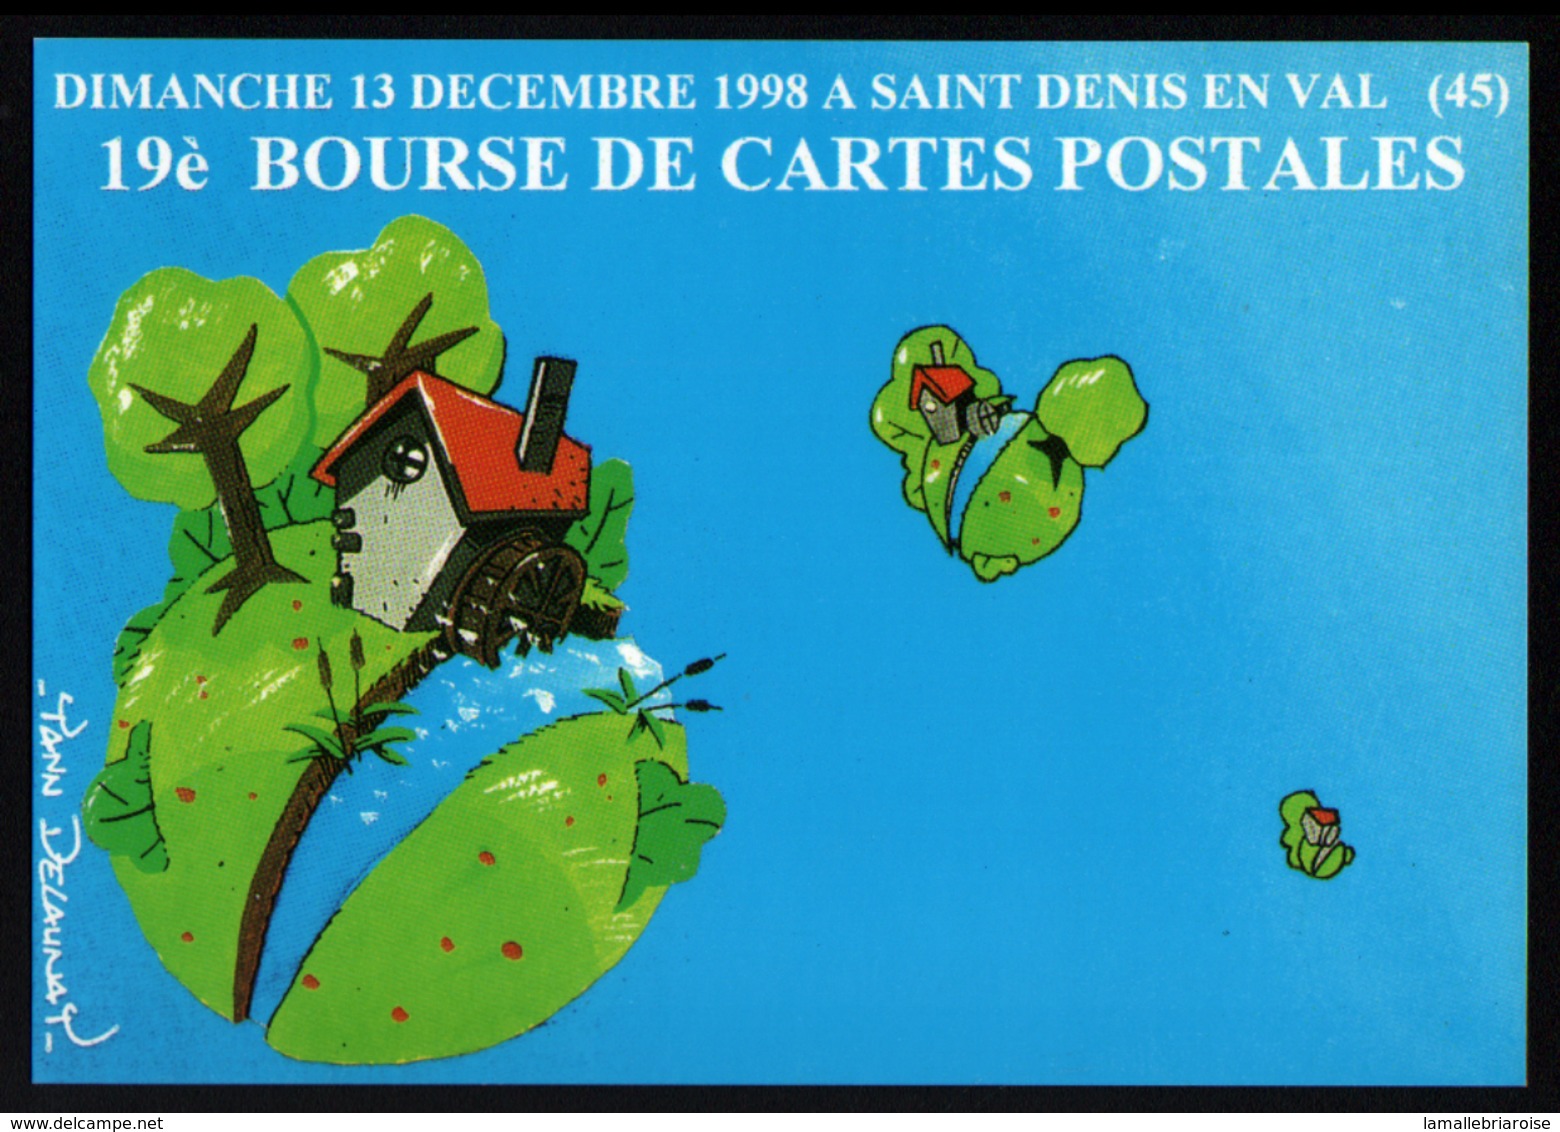 45, 19ème Bourse De Cartes Postales,St Denis En Val, 13-12-1998, Les Moulins, Cachet Temporaire - Bourses & Salons De Collections